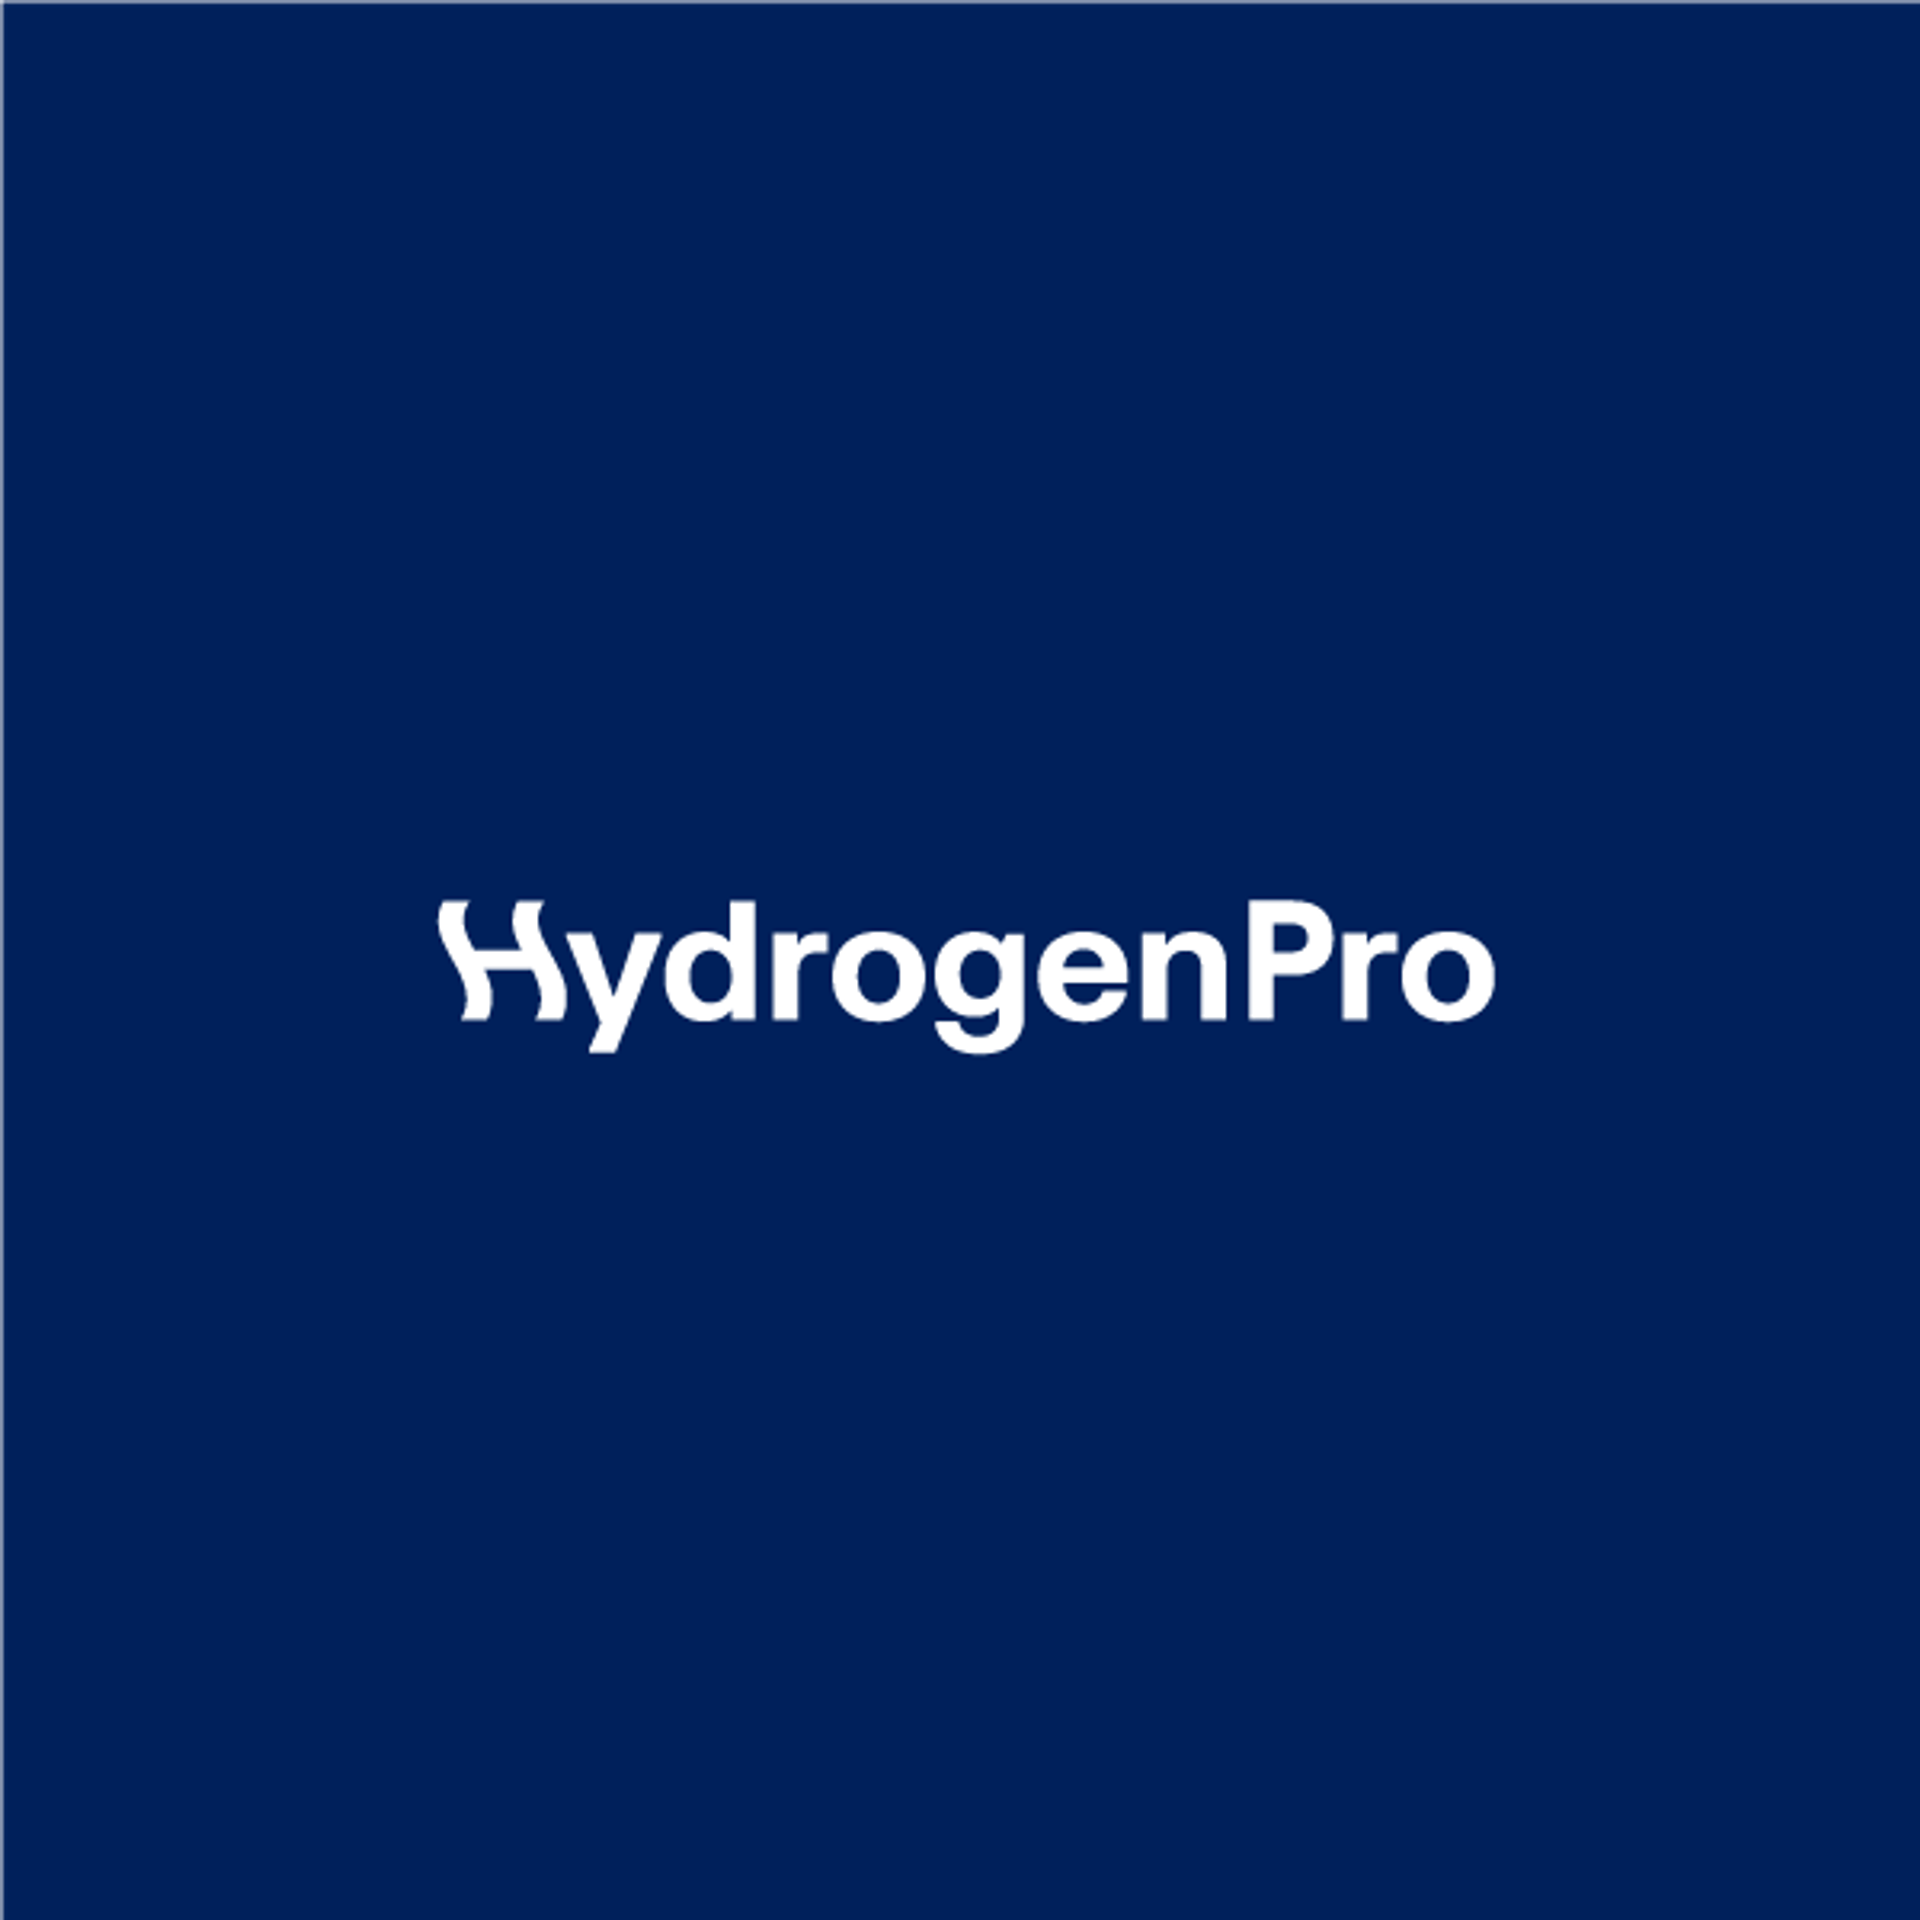 HydrogenPro logo